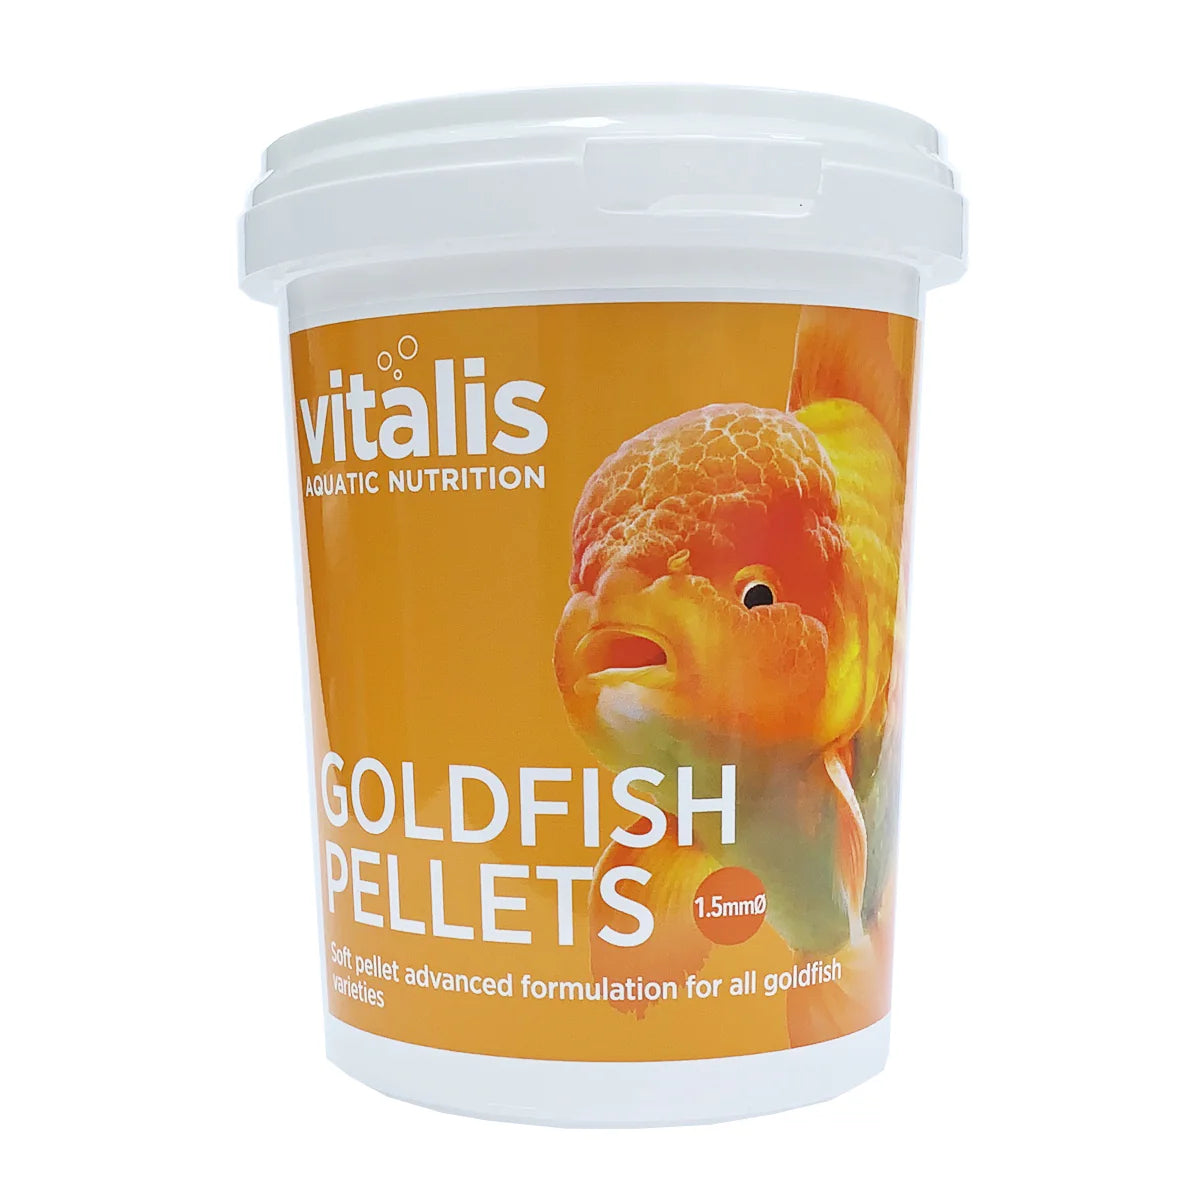 Vitalis Goldfish Pellets